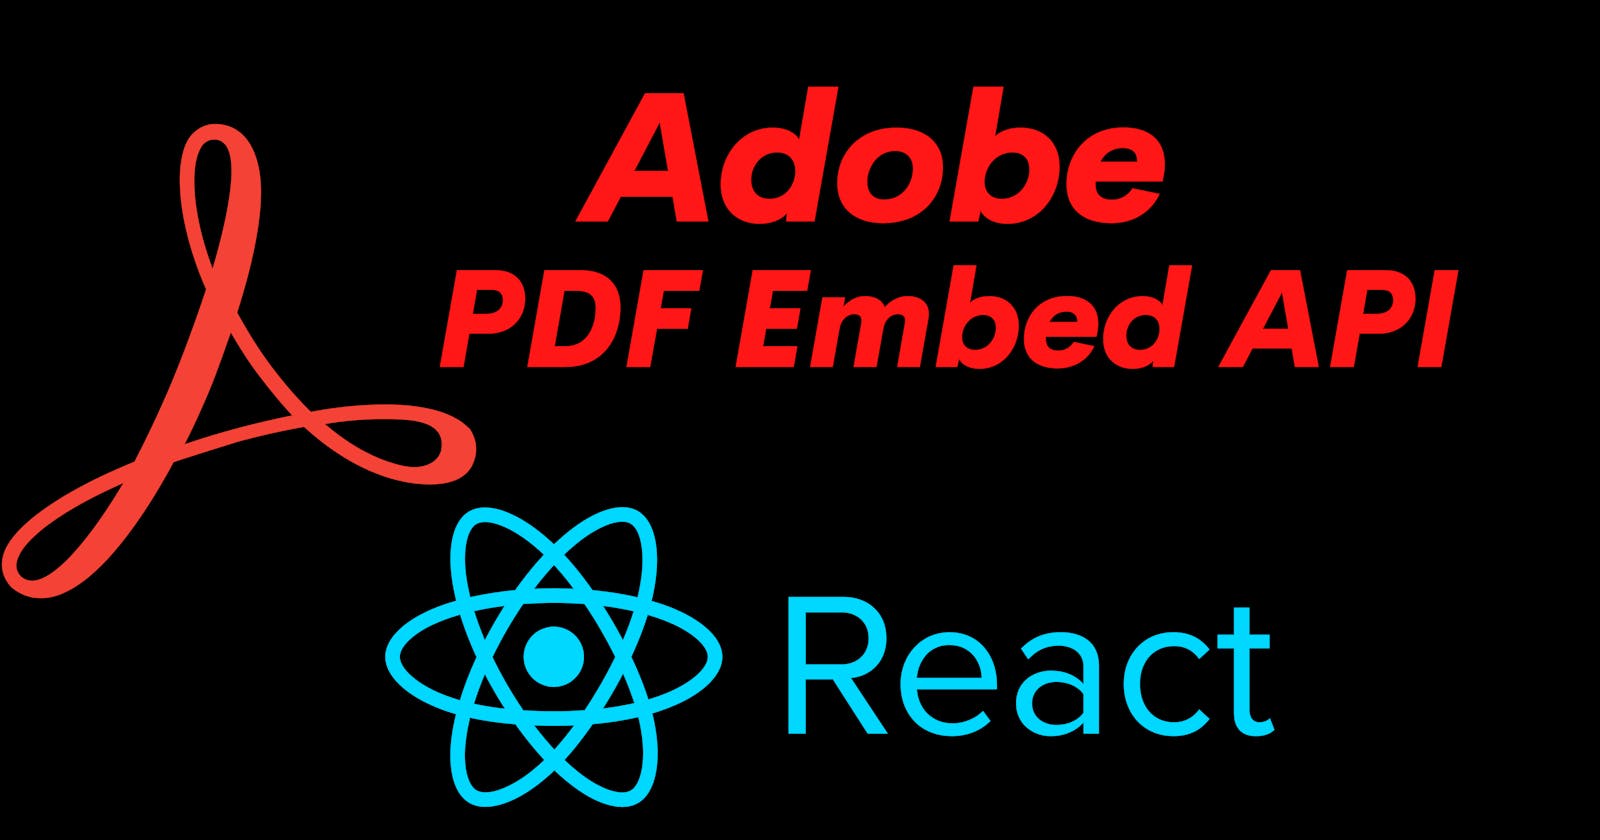 Displaying Pdf 
in React js using Adobe PDF Embed API